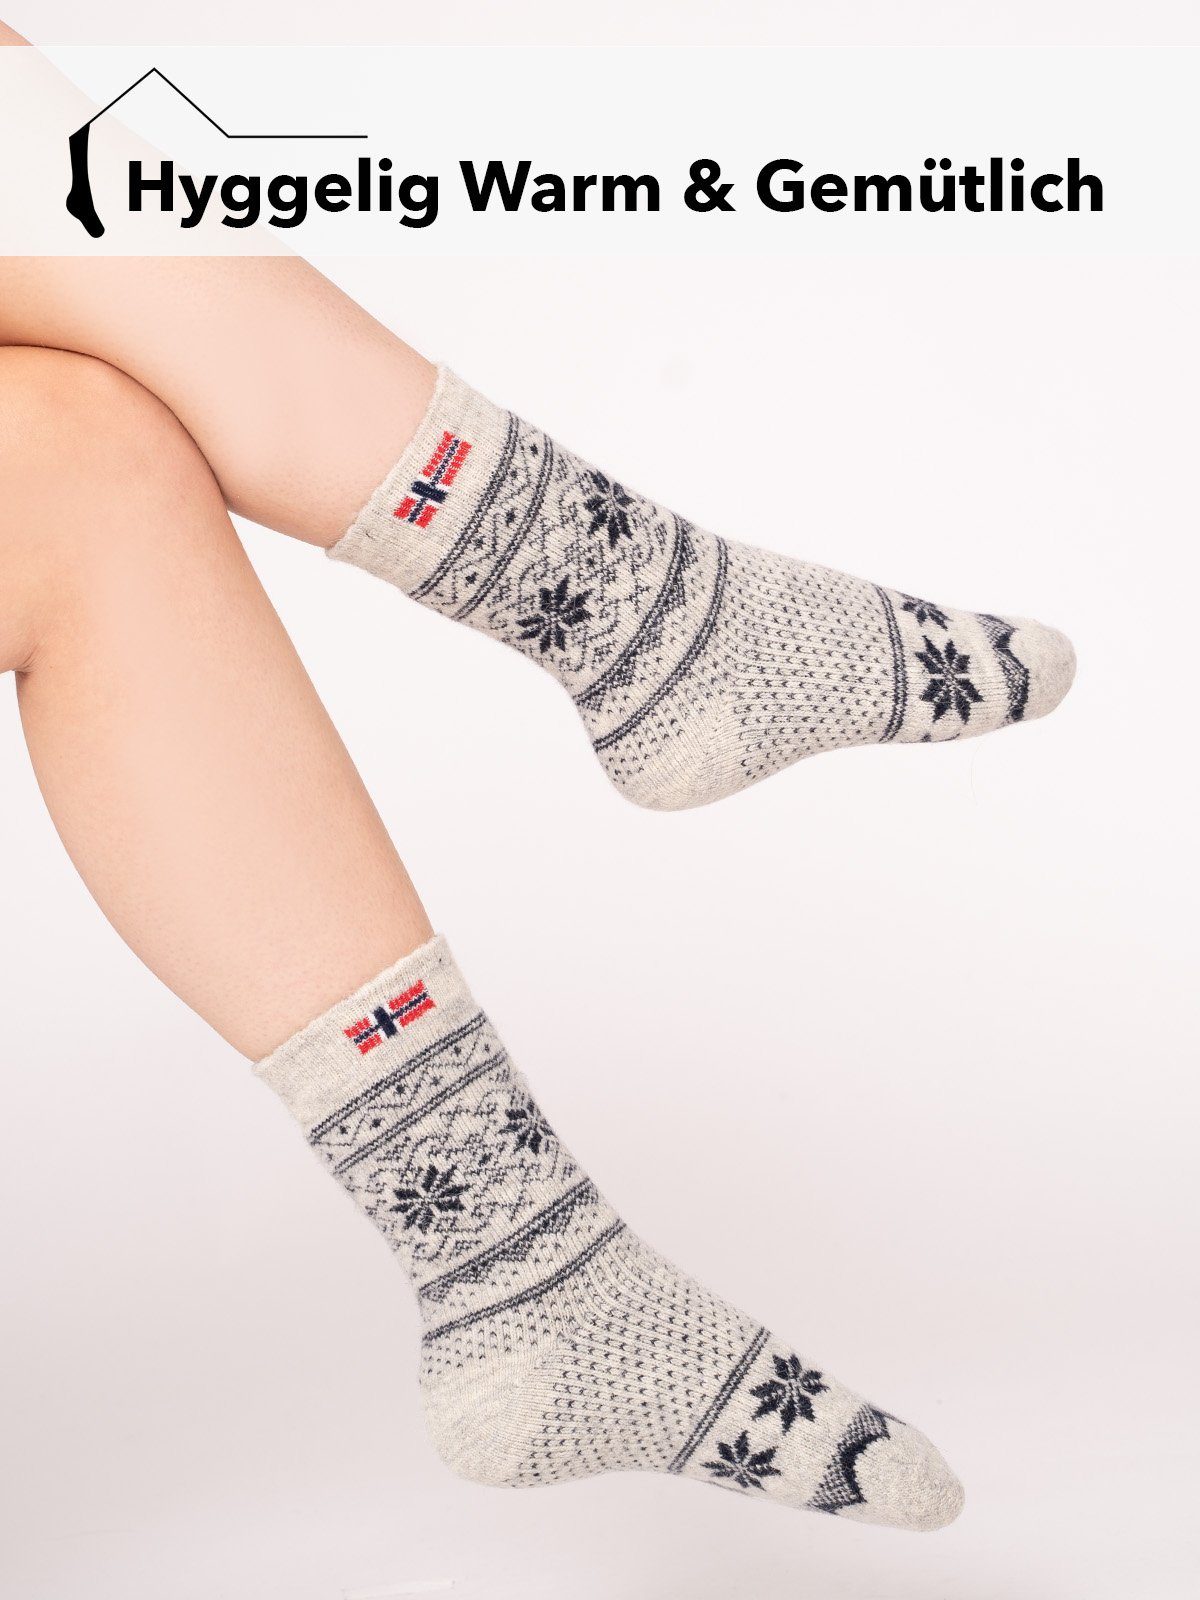 HomeOfSocks Norwegersocken Socken Wollsocke 80% "Jacquard Norwegischem Wollanteil Norwegen" Navy Hyggelig Skandinavische Design Dicke Kuschelsocken Hoher Warm Nordic